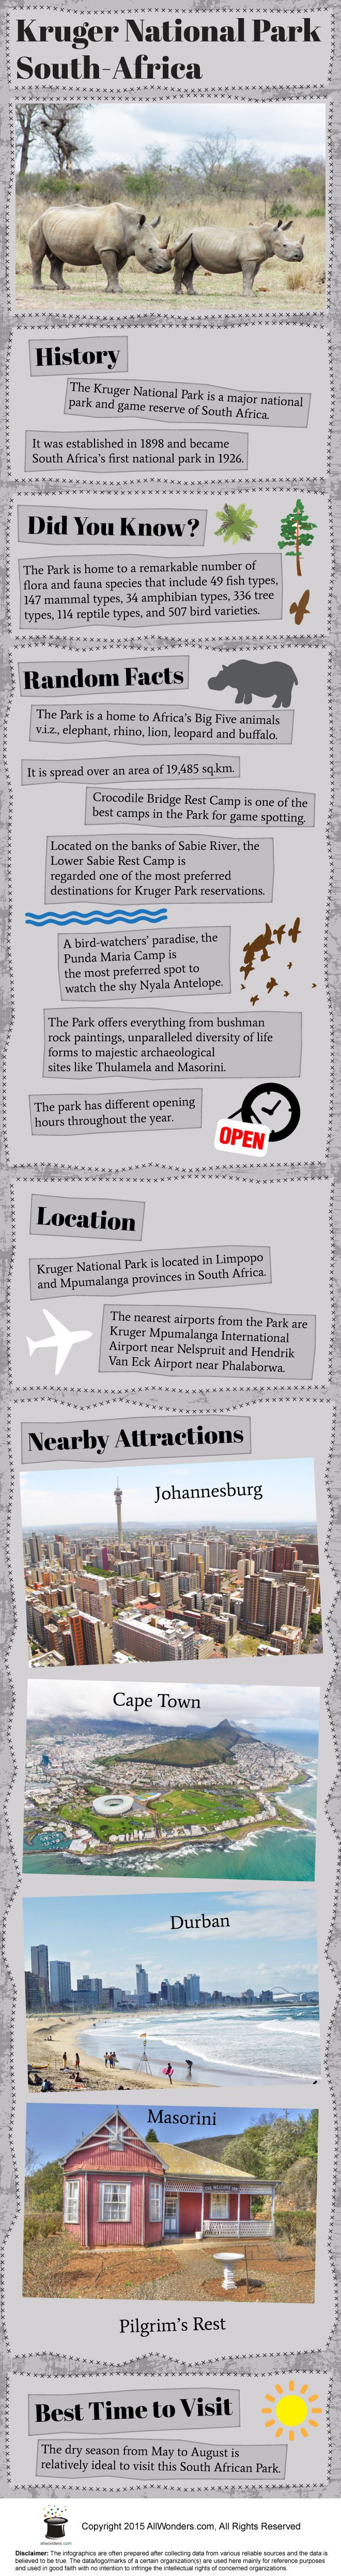 Kruger National Park Infographic